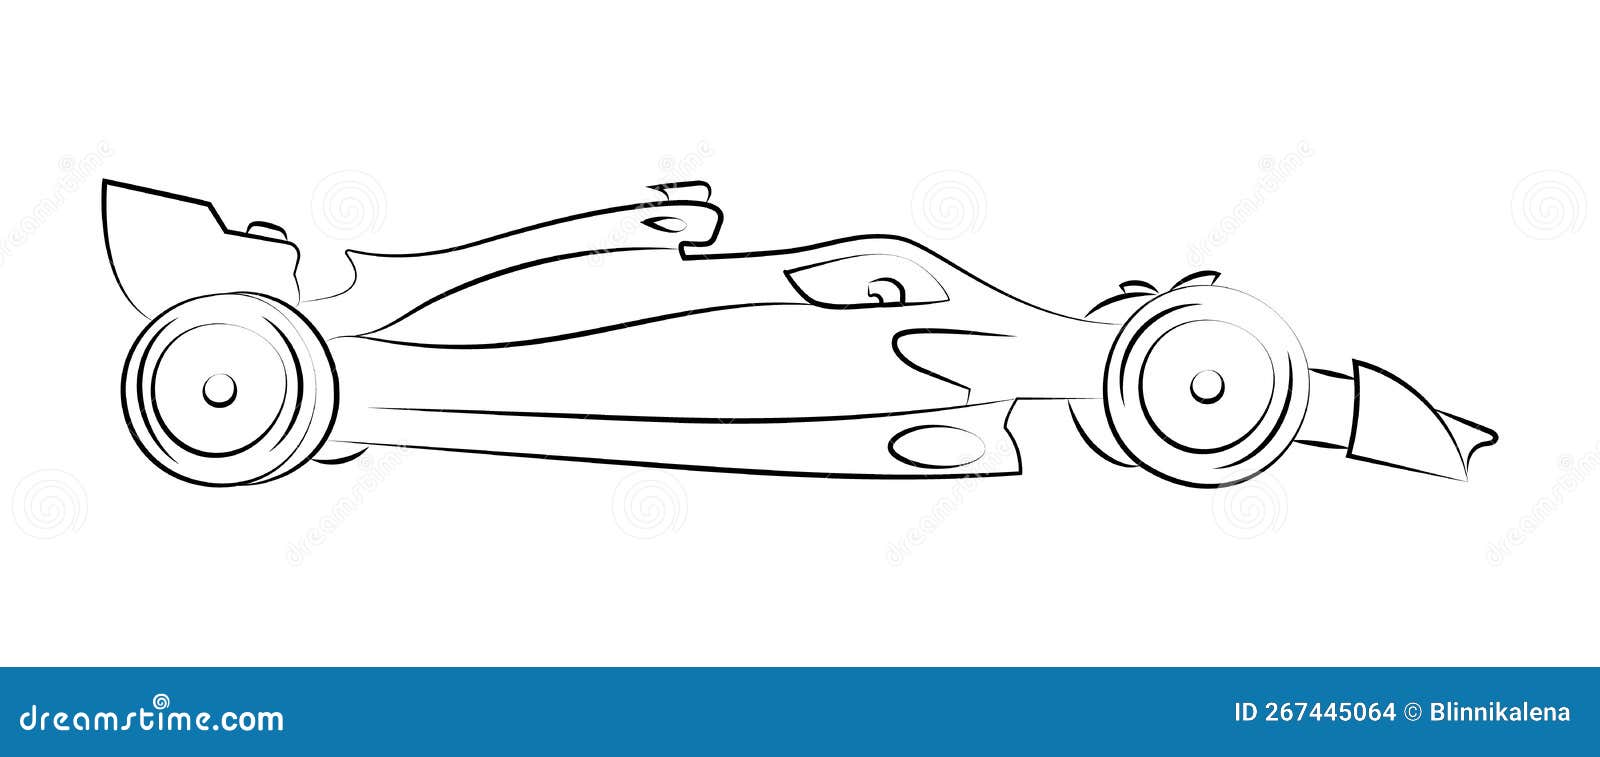 25 Easy Race Car Drawing Ideas  Draw a Race Car